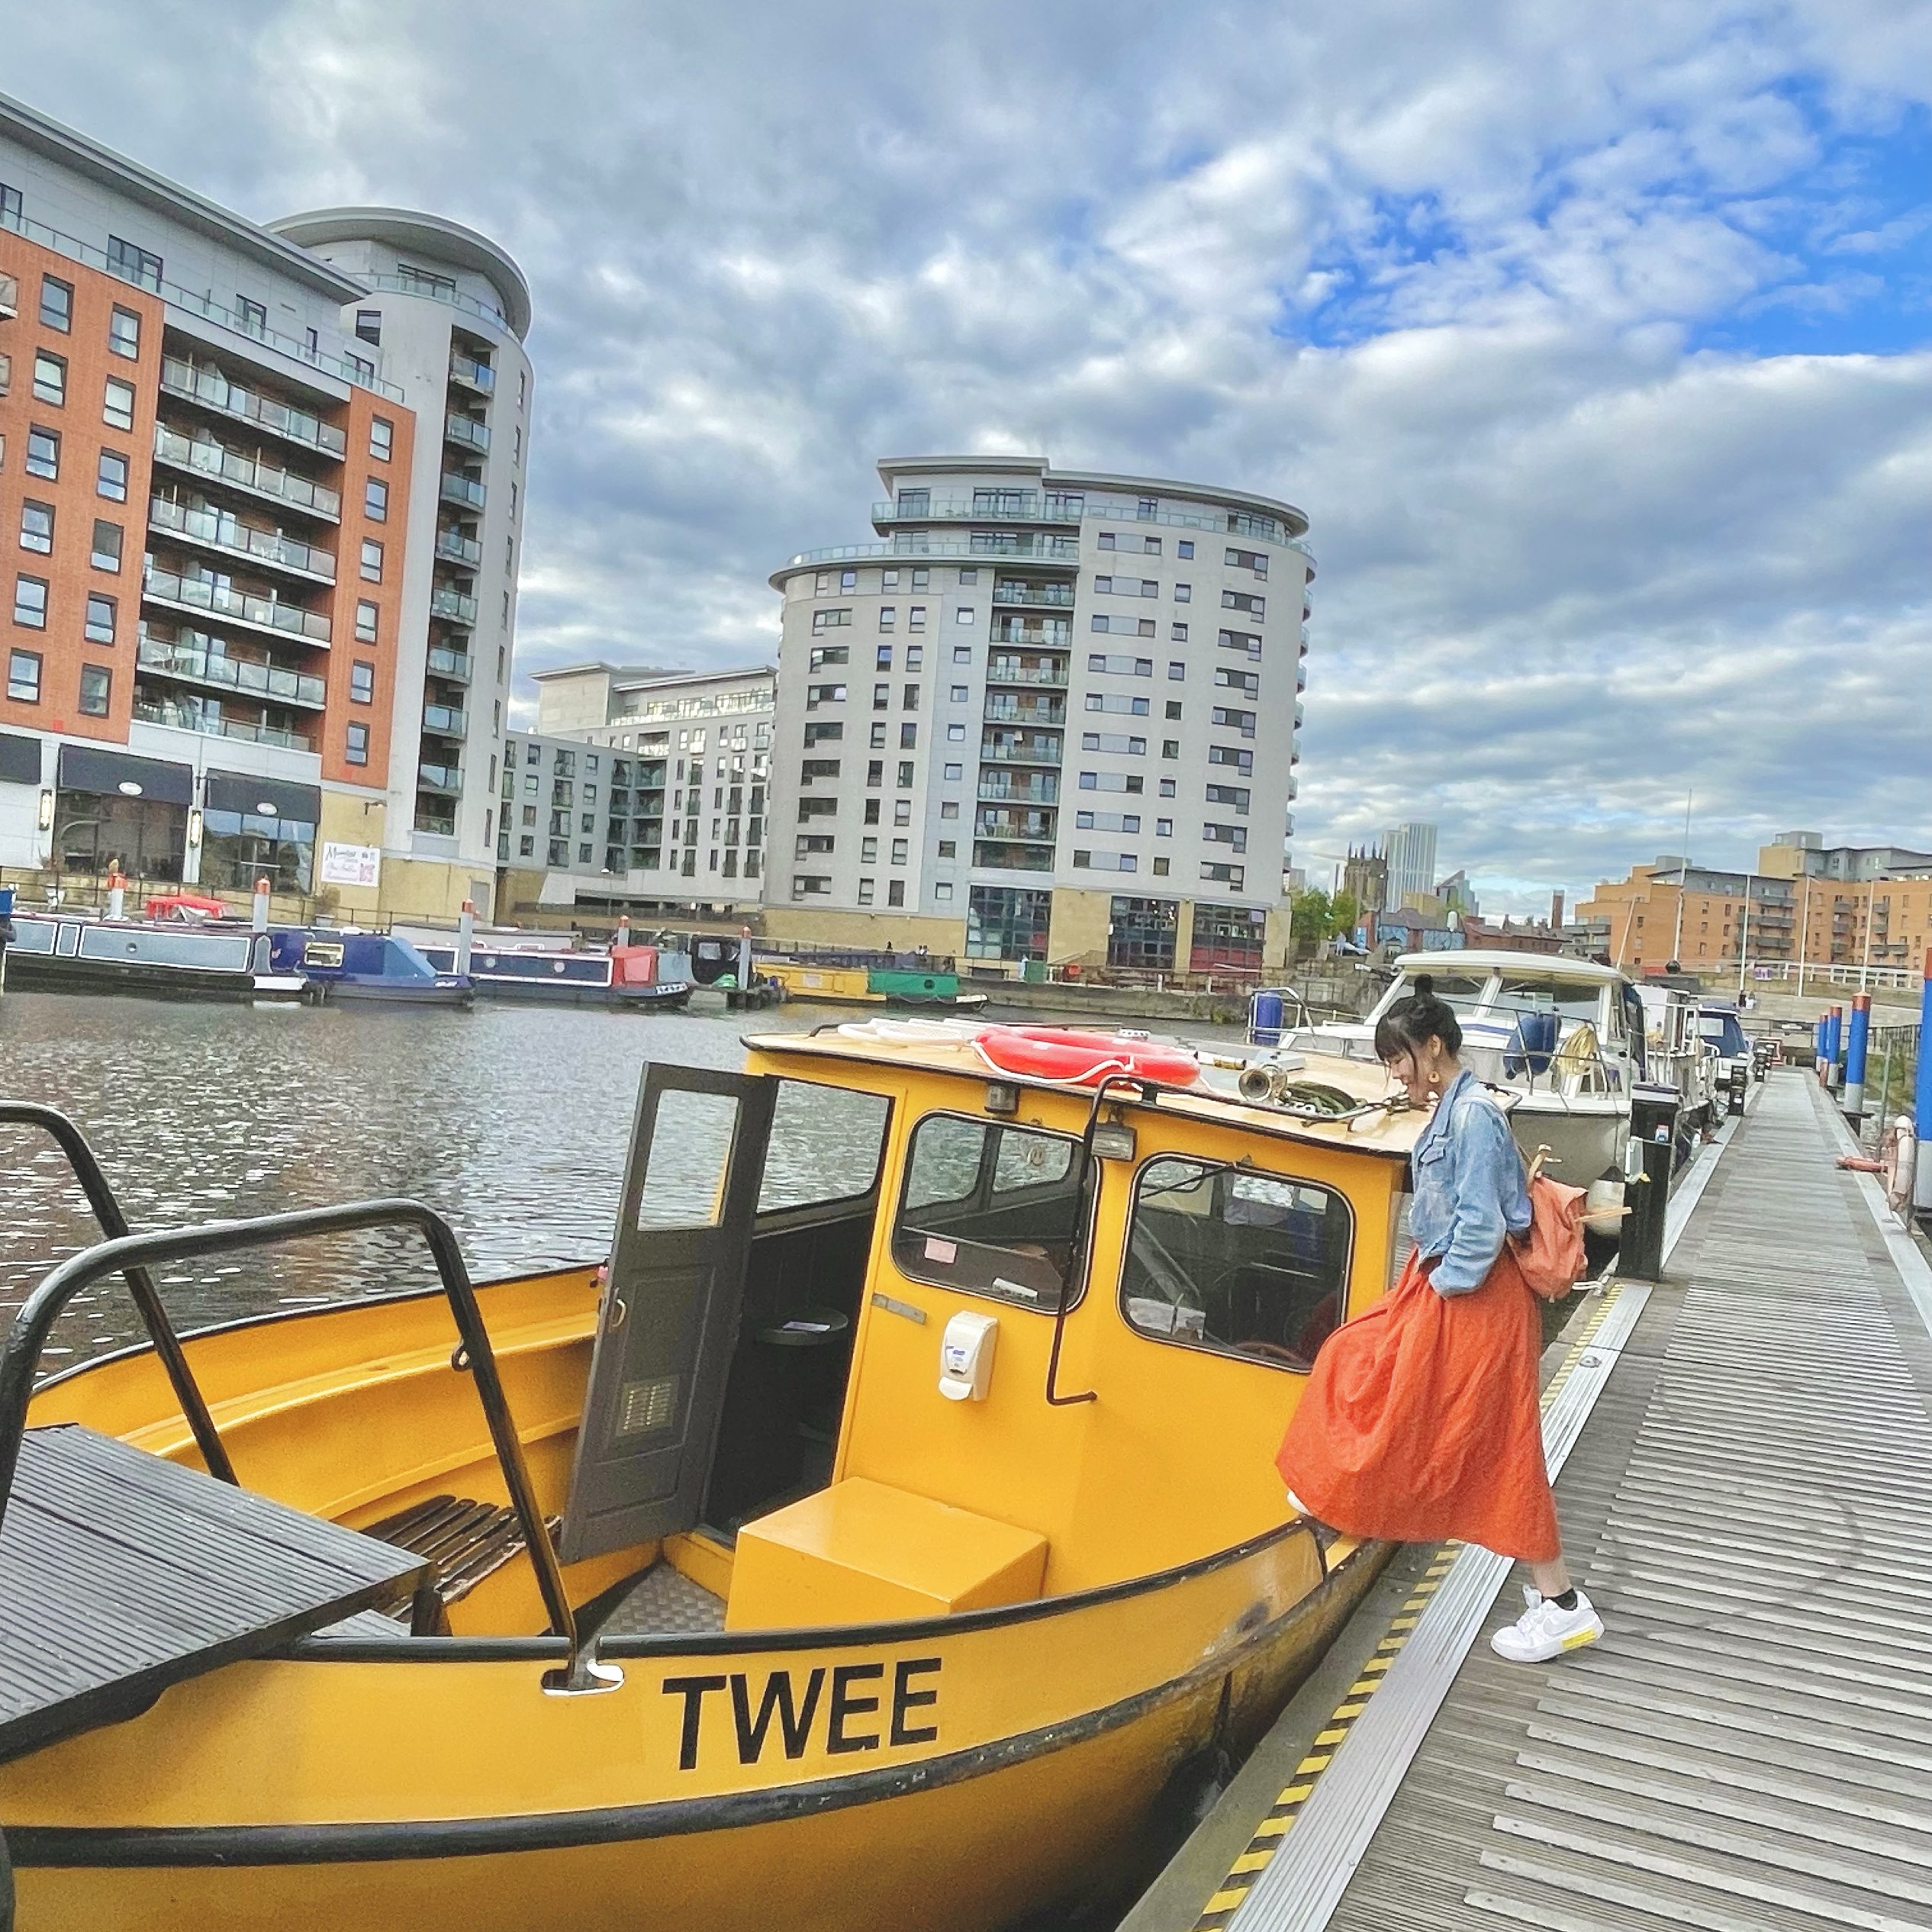 英国Leeds一日游 - Water Taxi 体验 ~ £1市中心游船